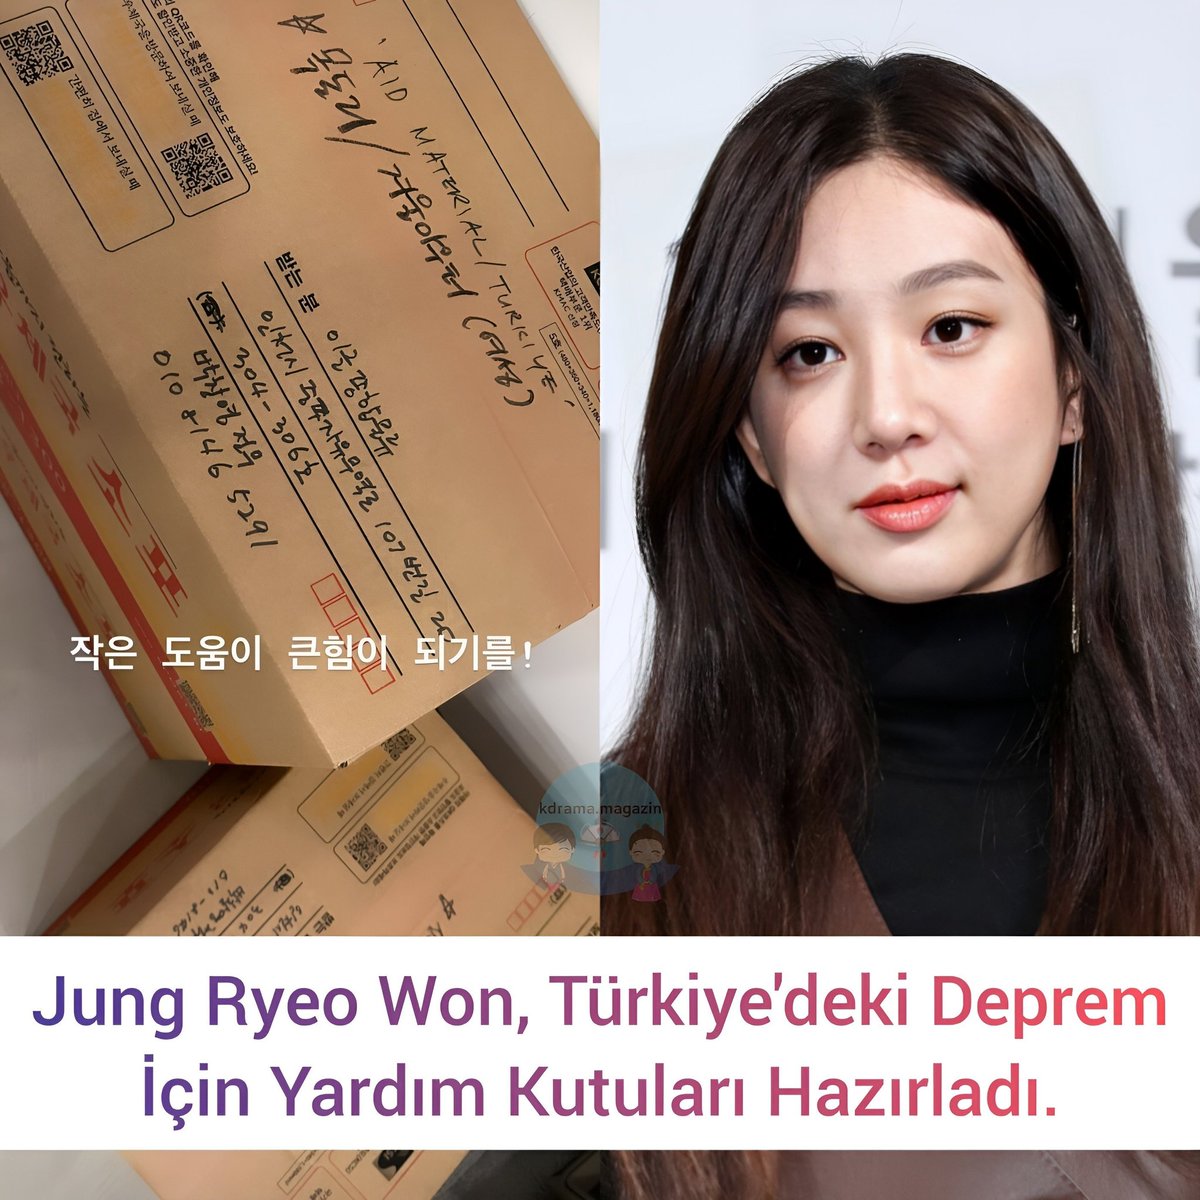 #JungRyeoWon, Türkiye'deki Deprem
İçin Yardım Kutuları Hazırladı.